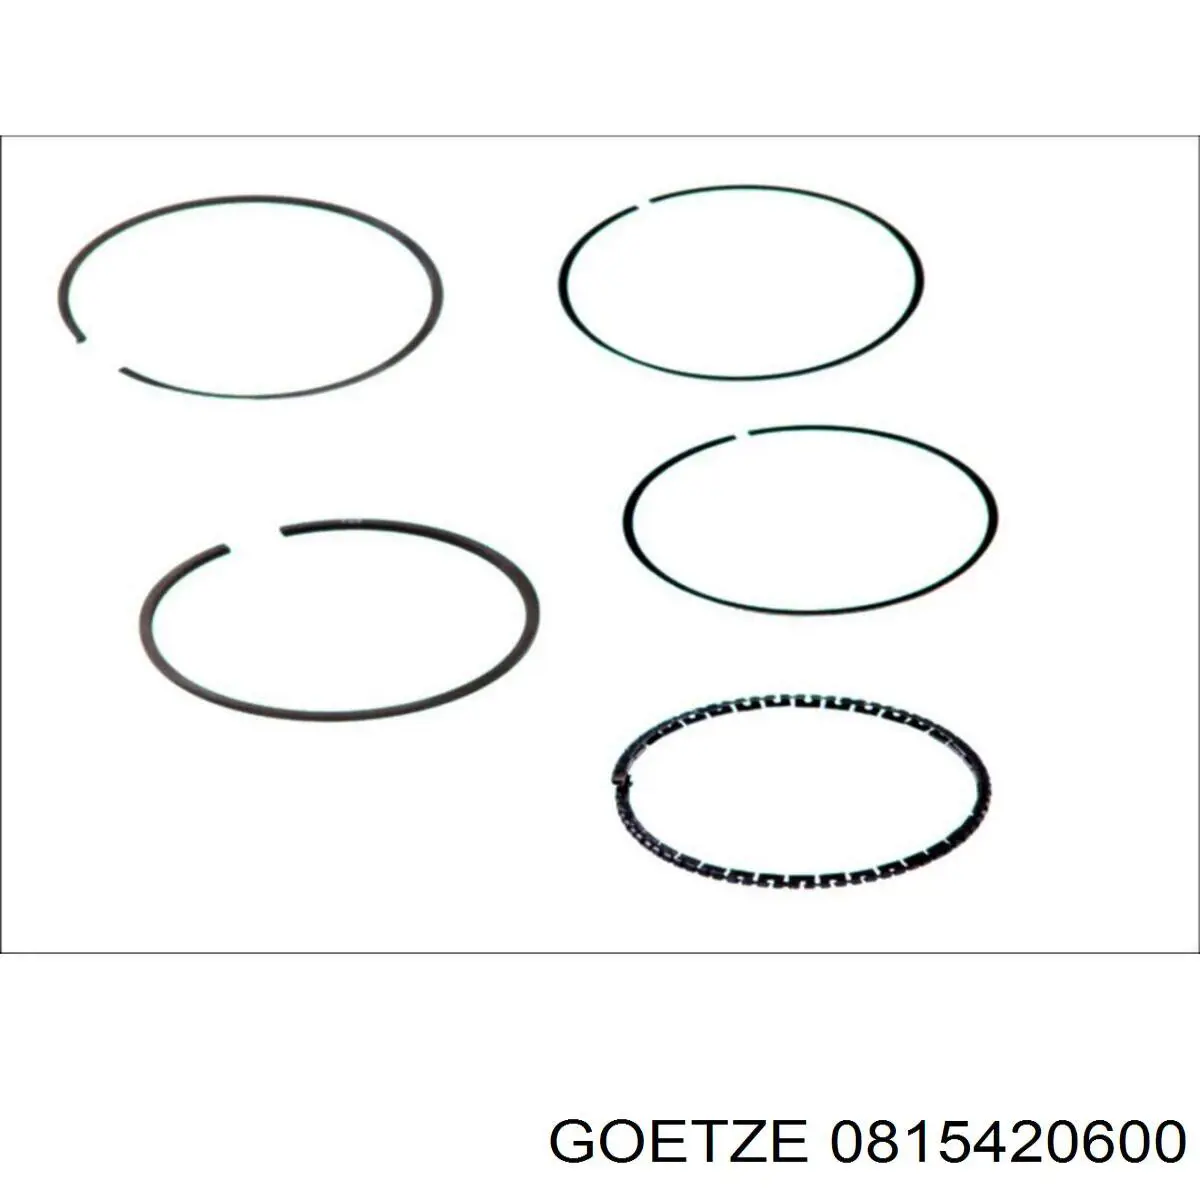 815420600 Goetze кольца поршневые на 1 цилиндр, 2-й ремонт (+0,50)